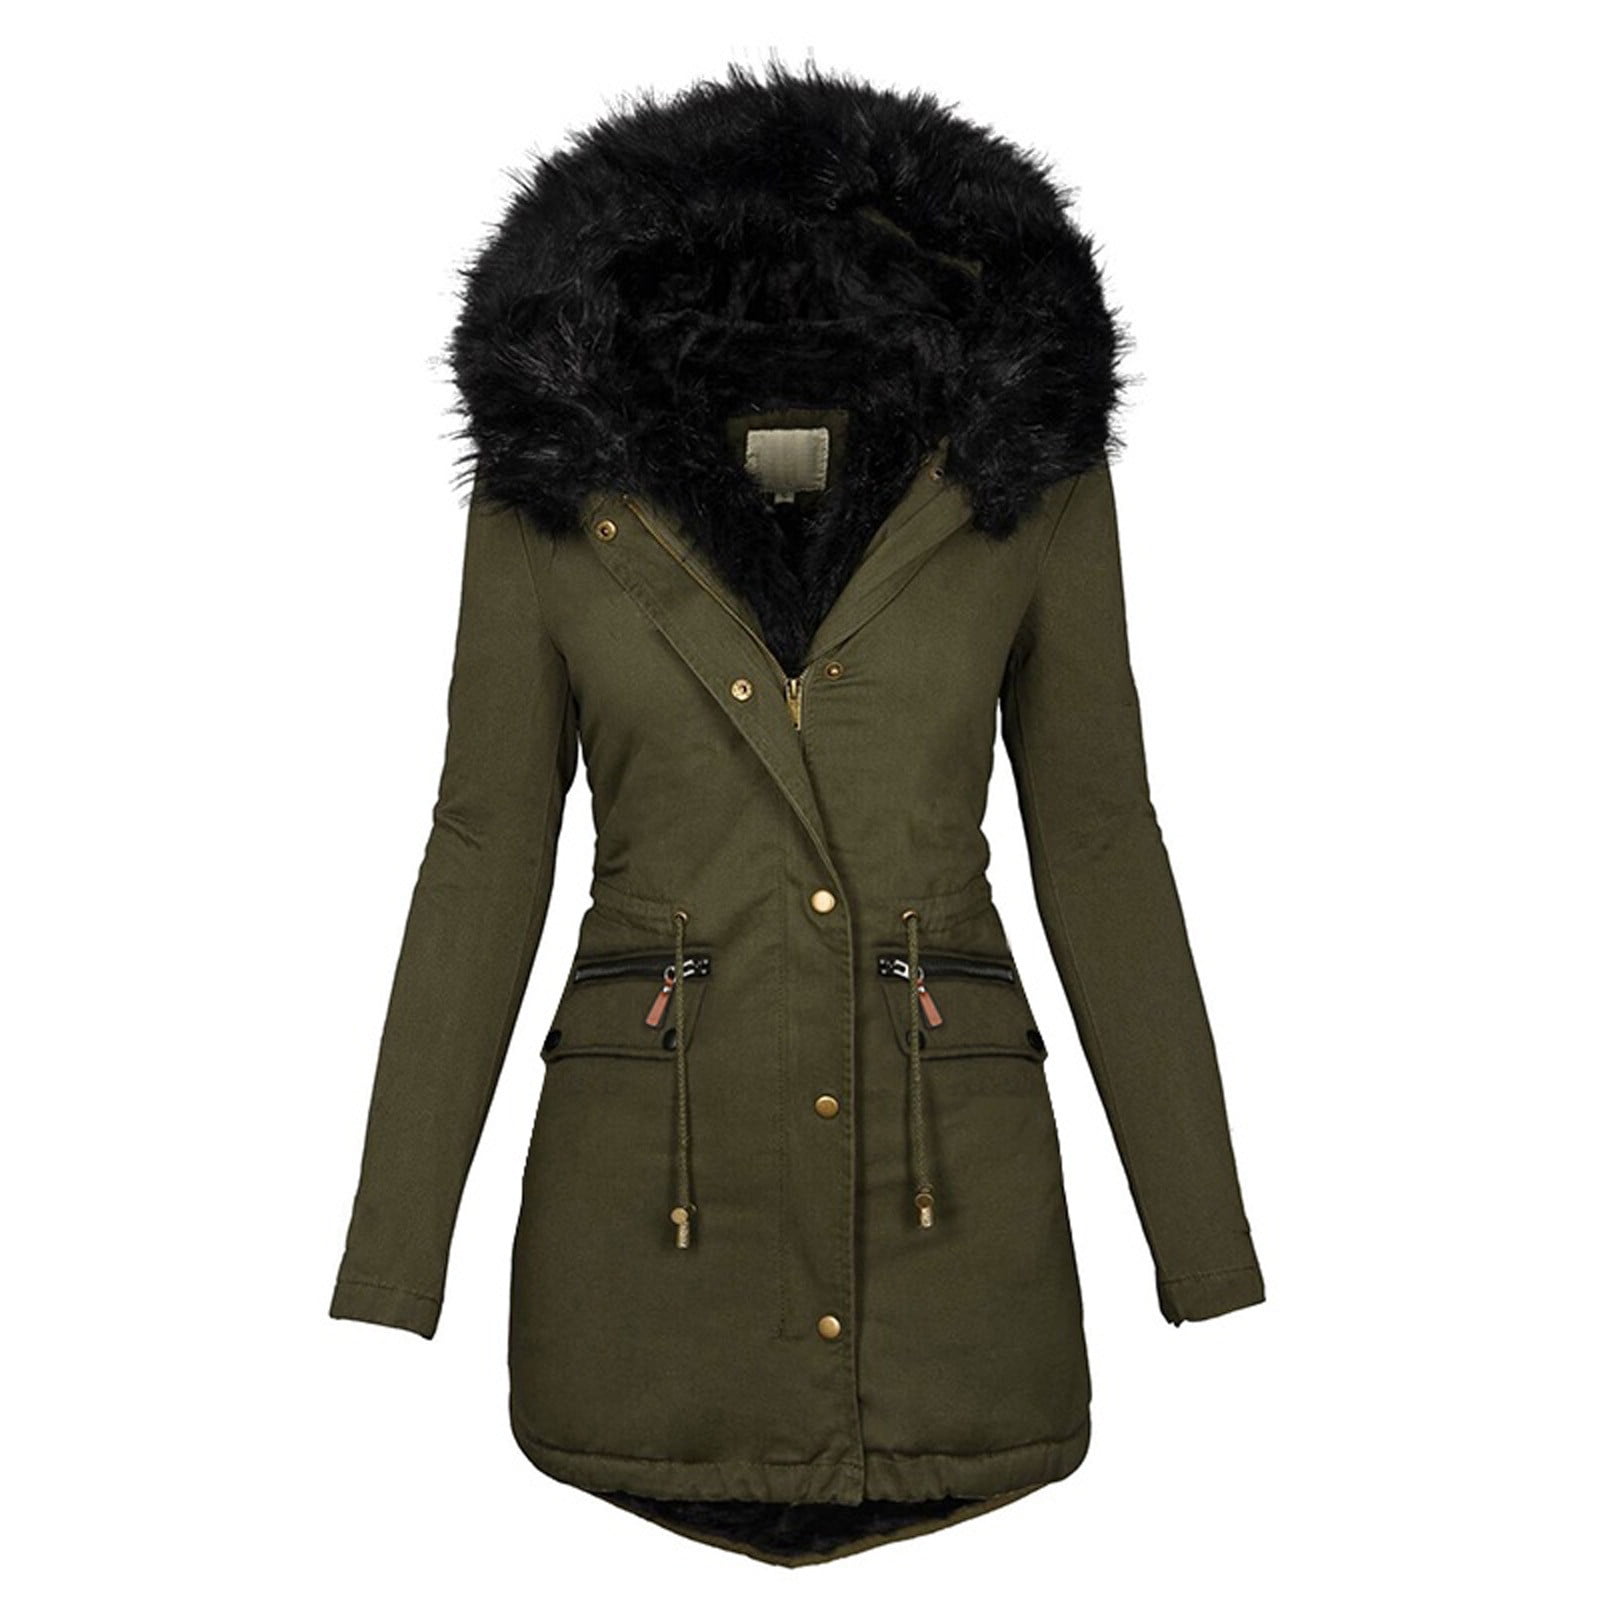 Parka Jacket Women Winter Down Coats Loose Casual Outwear Warm ...